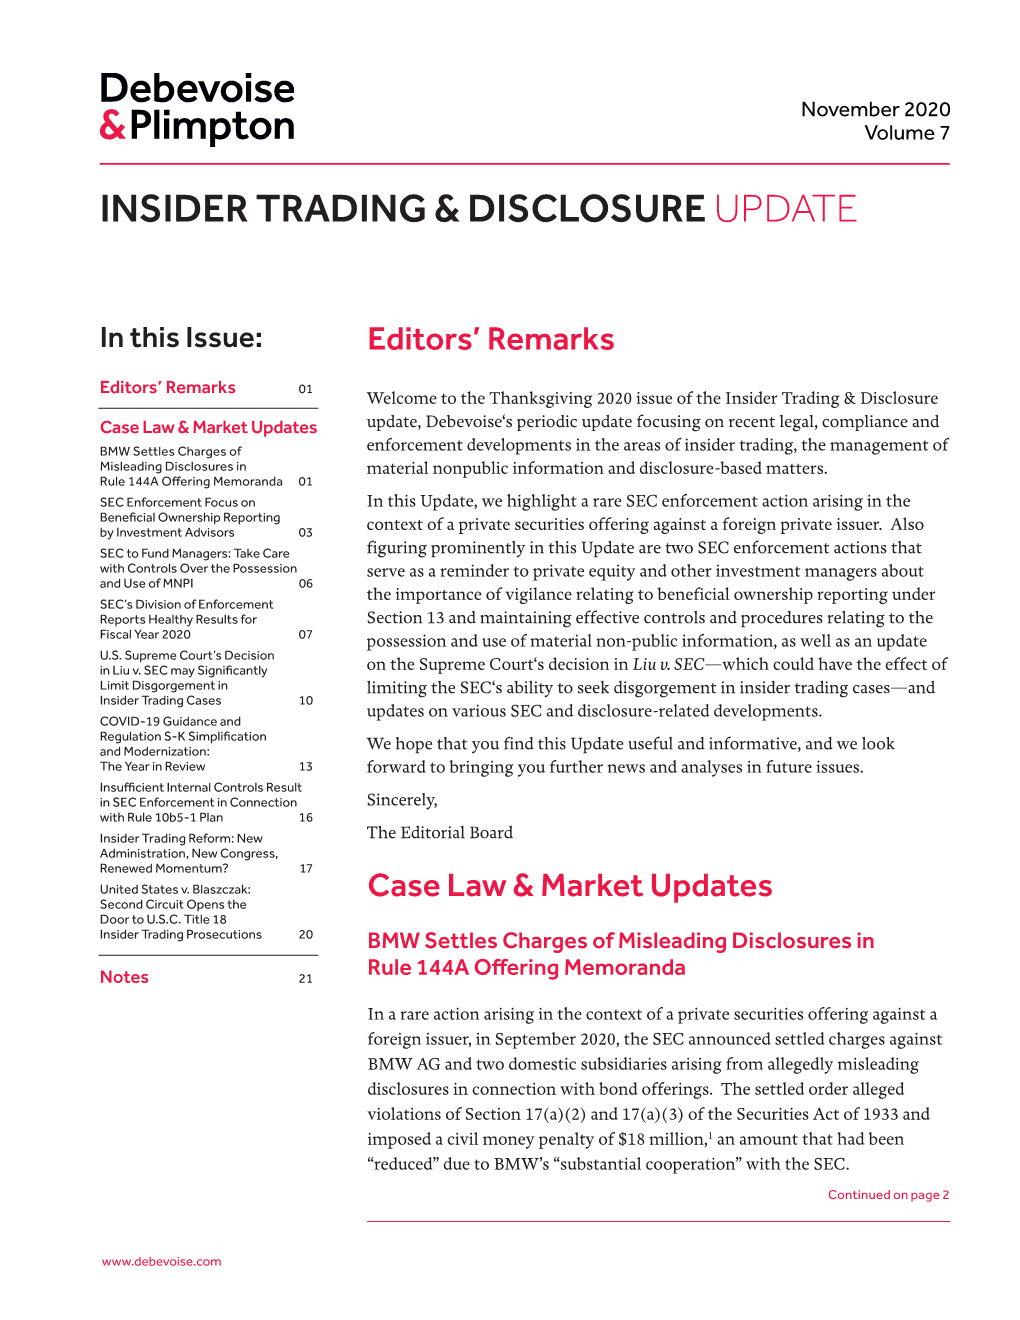 Insider Trading & Disclosureupdate